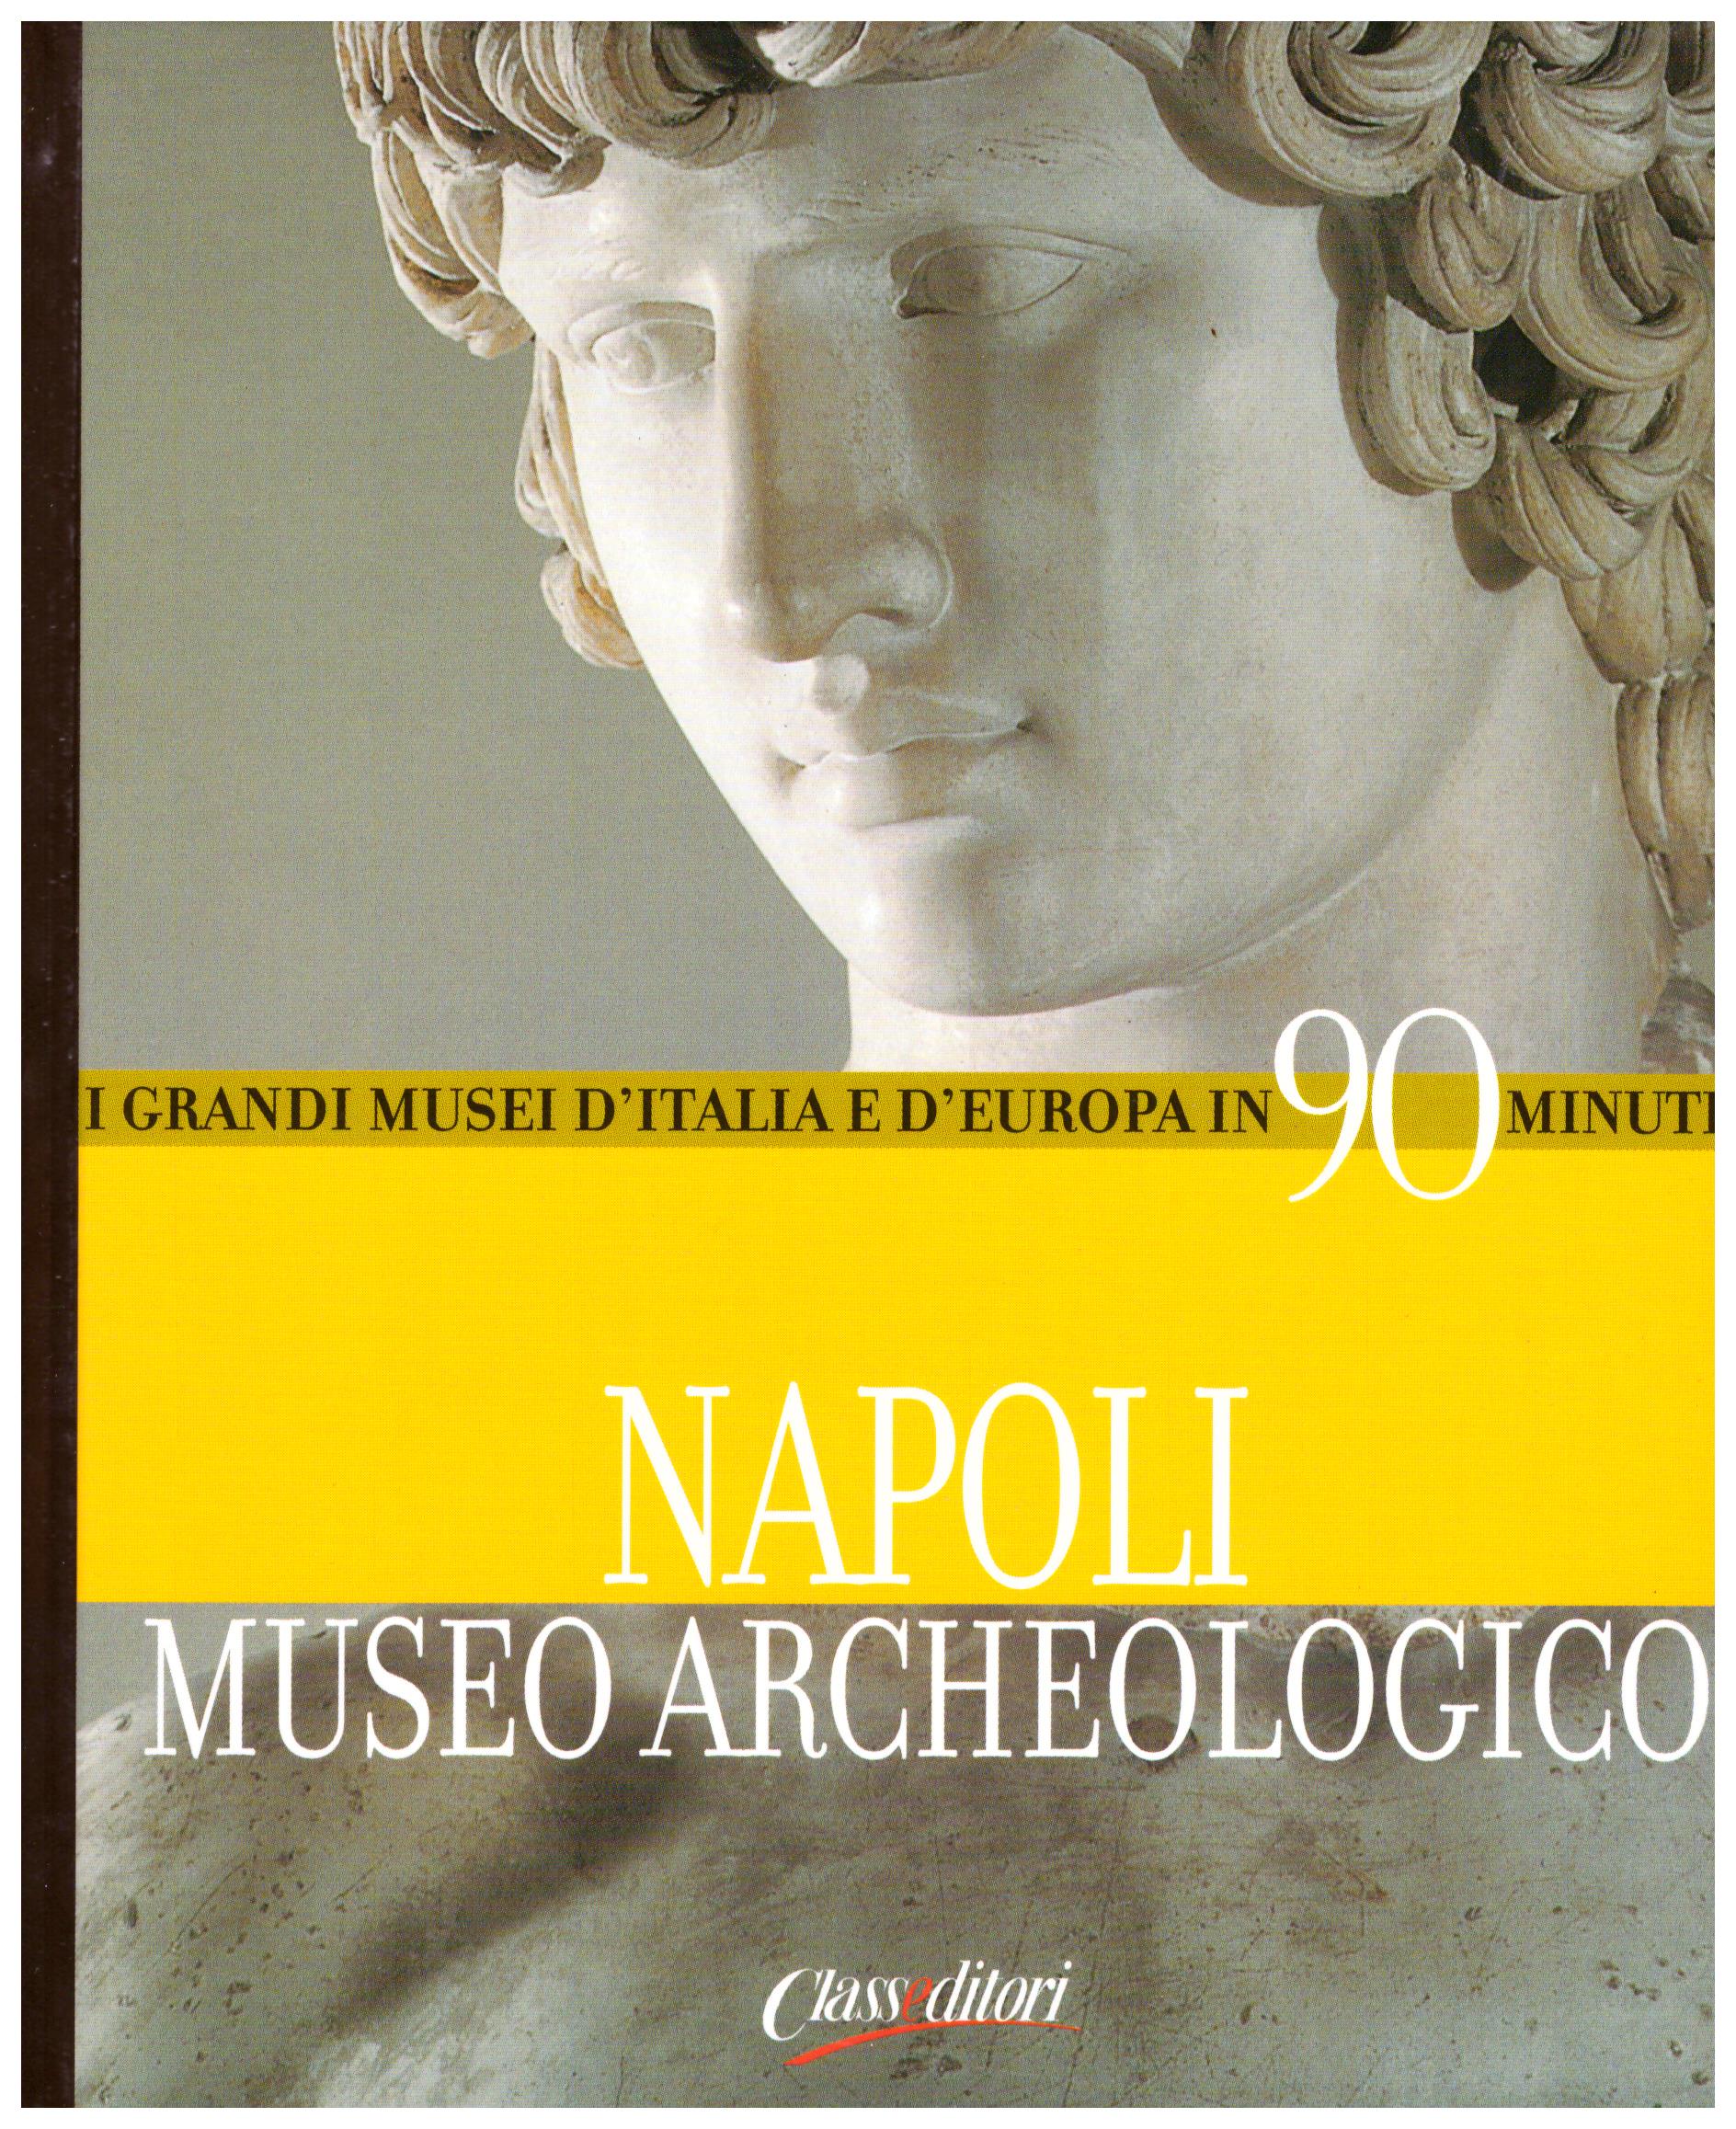 Titolo: I grandi musei d'italia e d'Europa in 90 minuti, Napoli Museo Archeologico Autore : AA.VV.  Editore: class editori